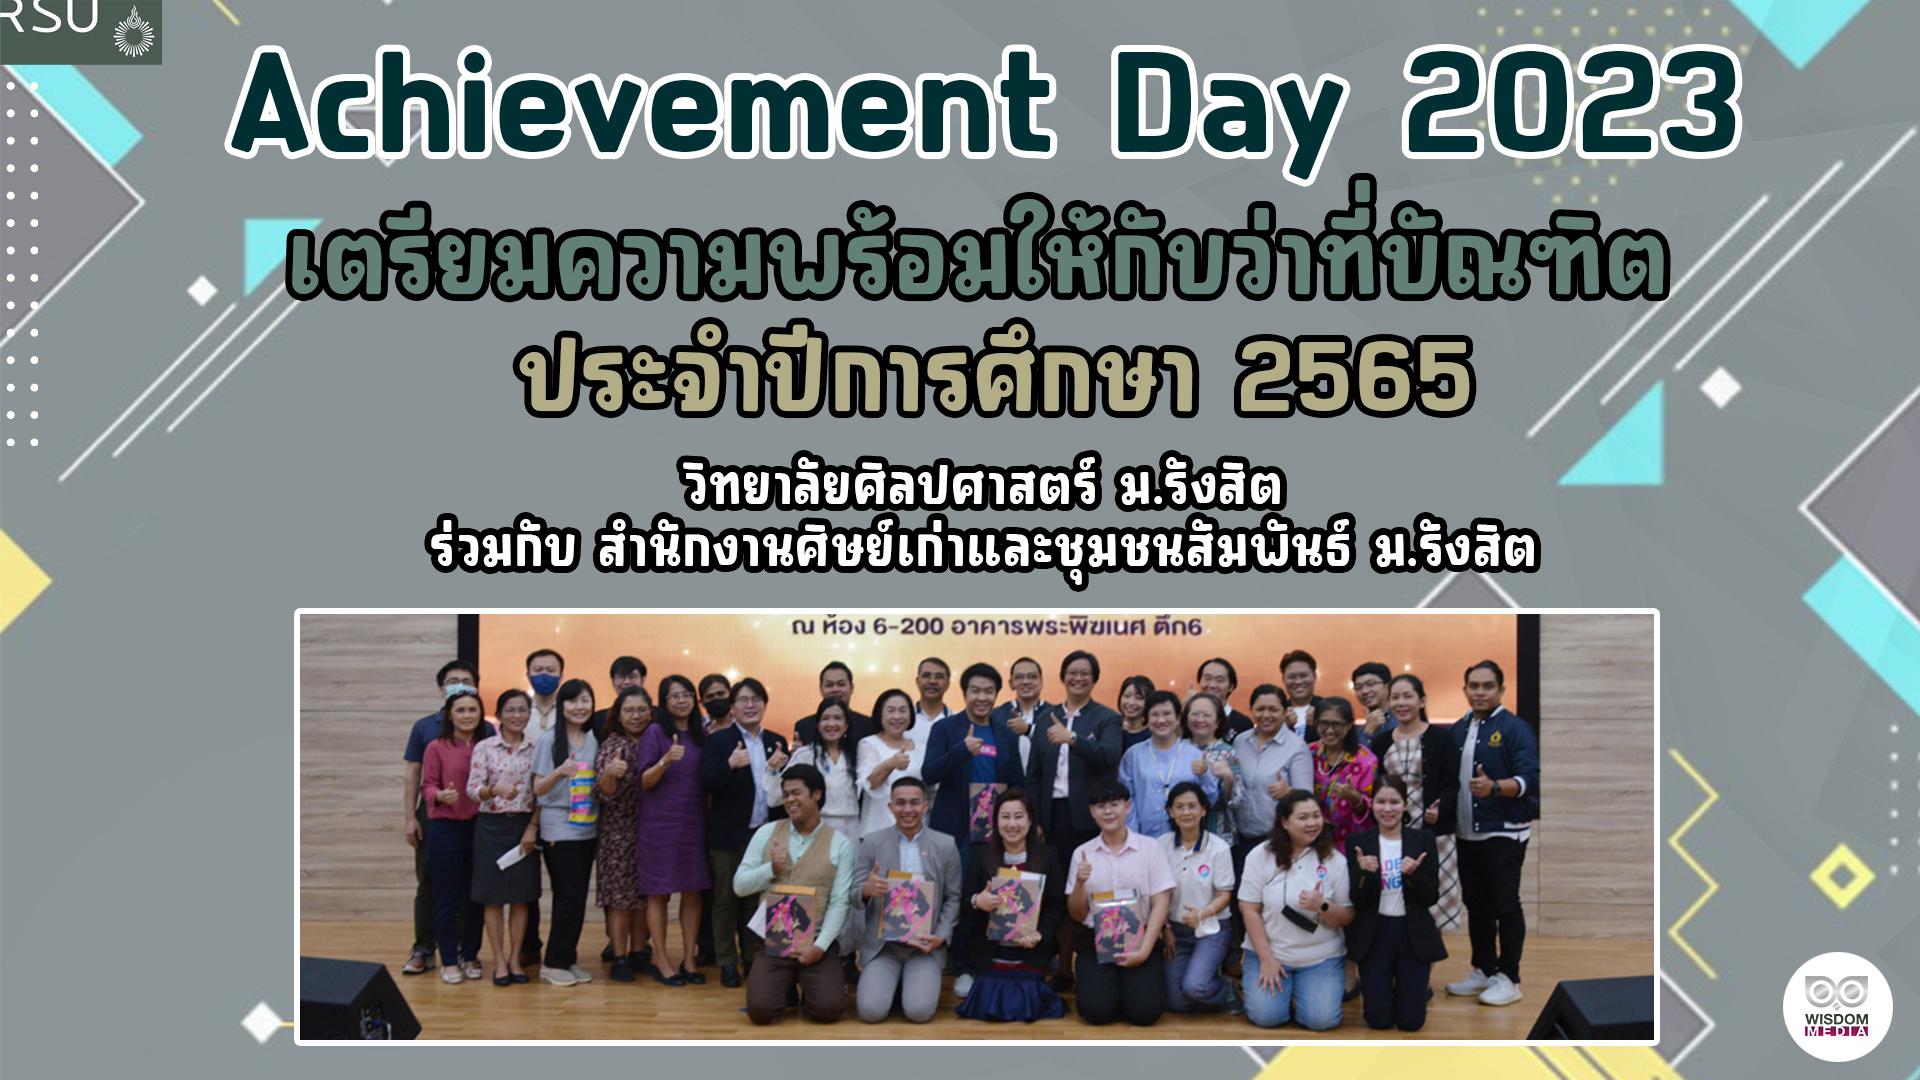 วิทยาลัยศิลปศาสตร์ ม.รังสิต จัดกิจกรรม Silapasat Achievement Day 2023